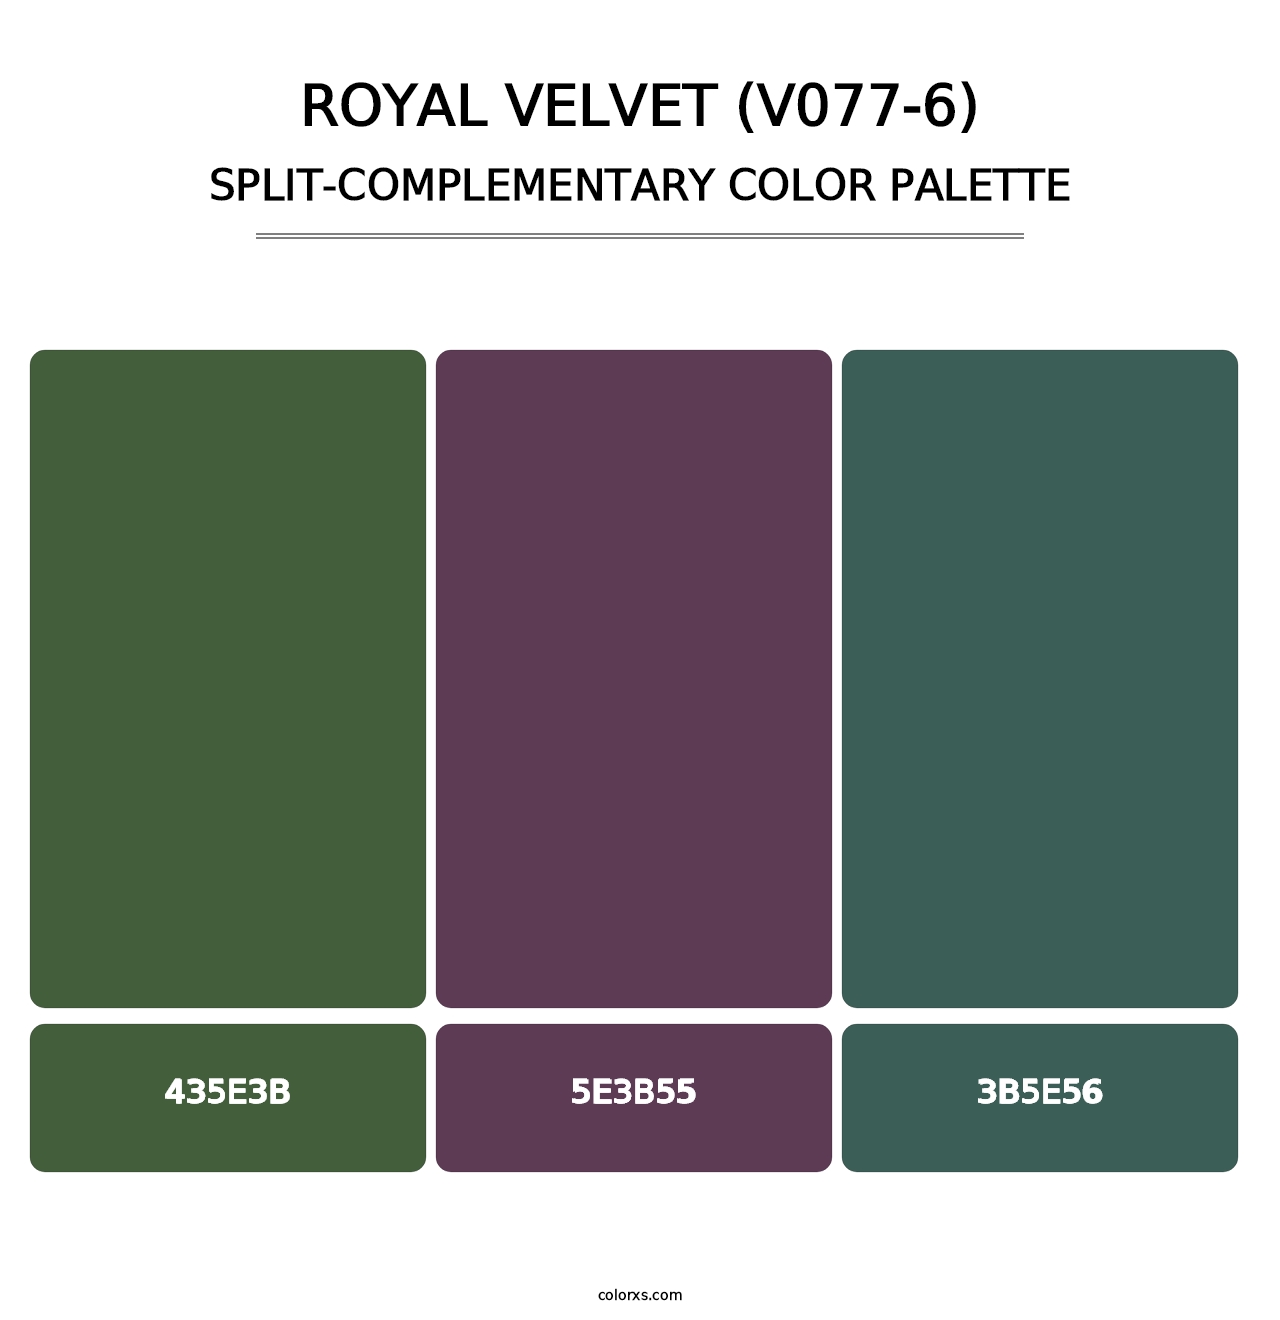 Royal Velvet (V077-6) - Split-Complementary Color Palette